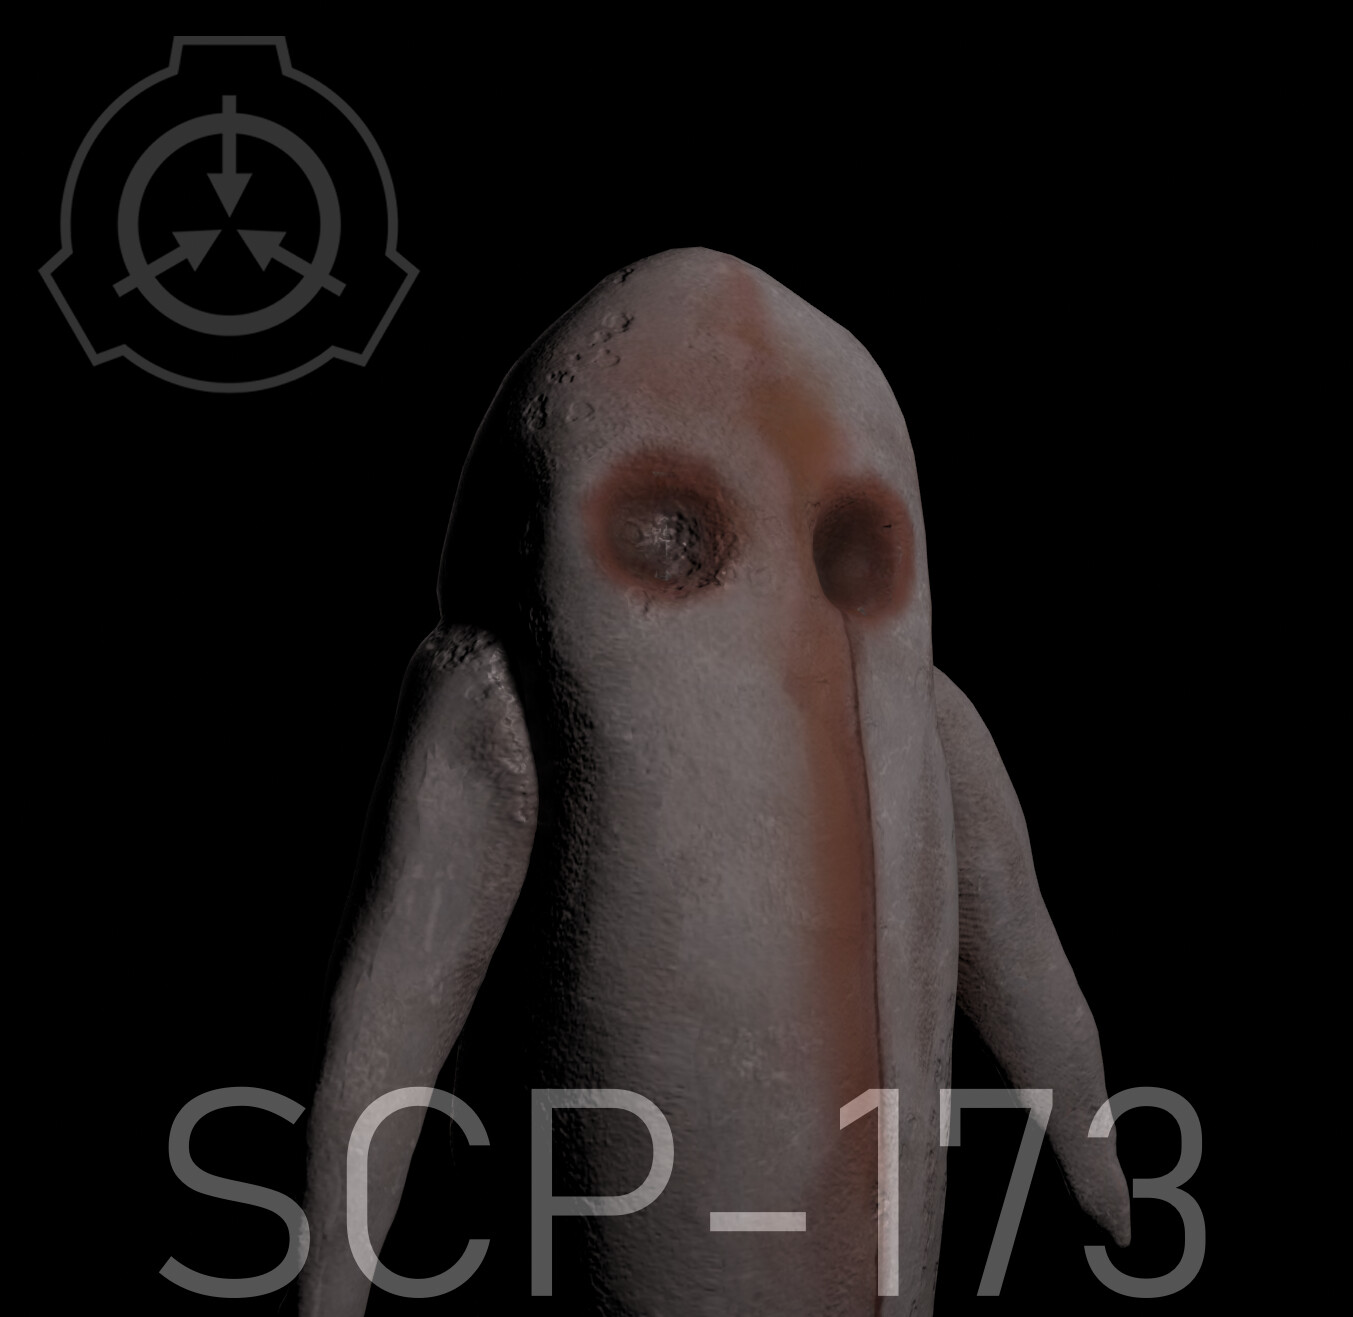 Scp-173 3D models - Sketchfab